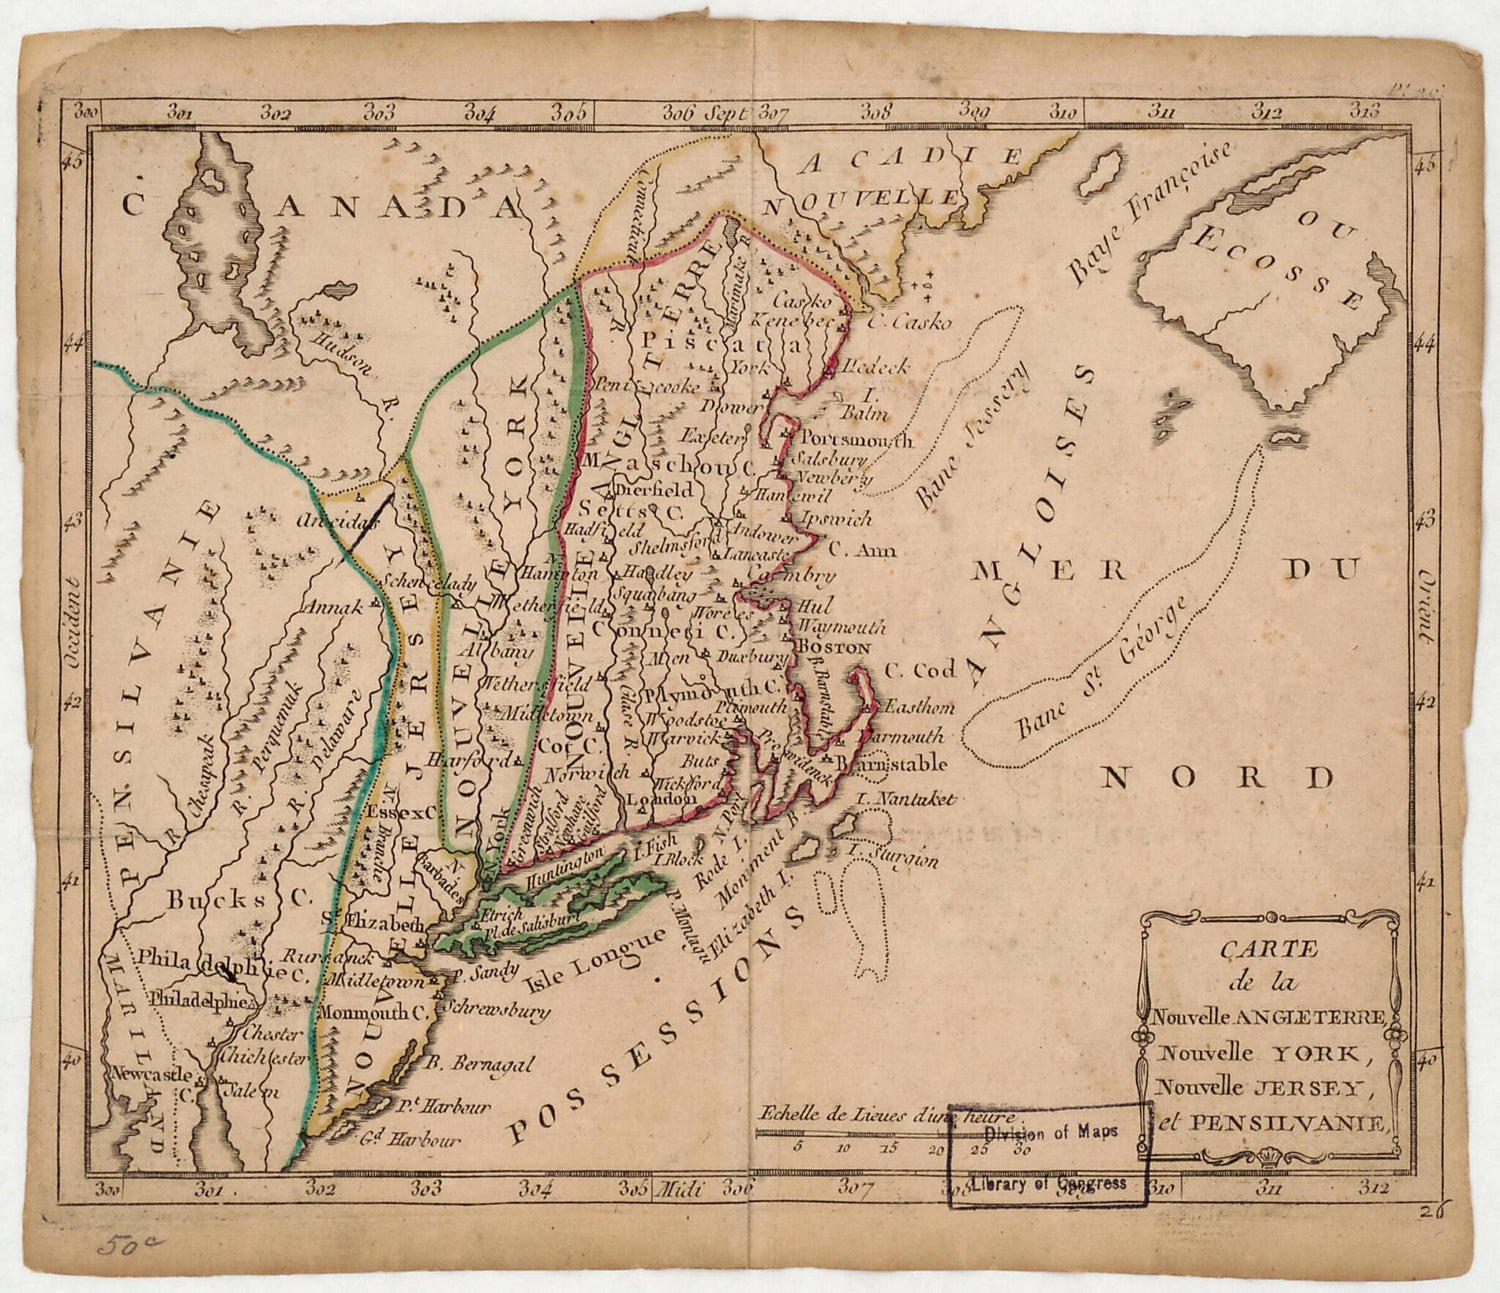 This old map of Carte De La Nouvelle Angleterre, Nouvelle York, Nouveau Jersey, Et Pensilvanie from 1780 was created by Joseph De Laporte in 1780